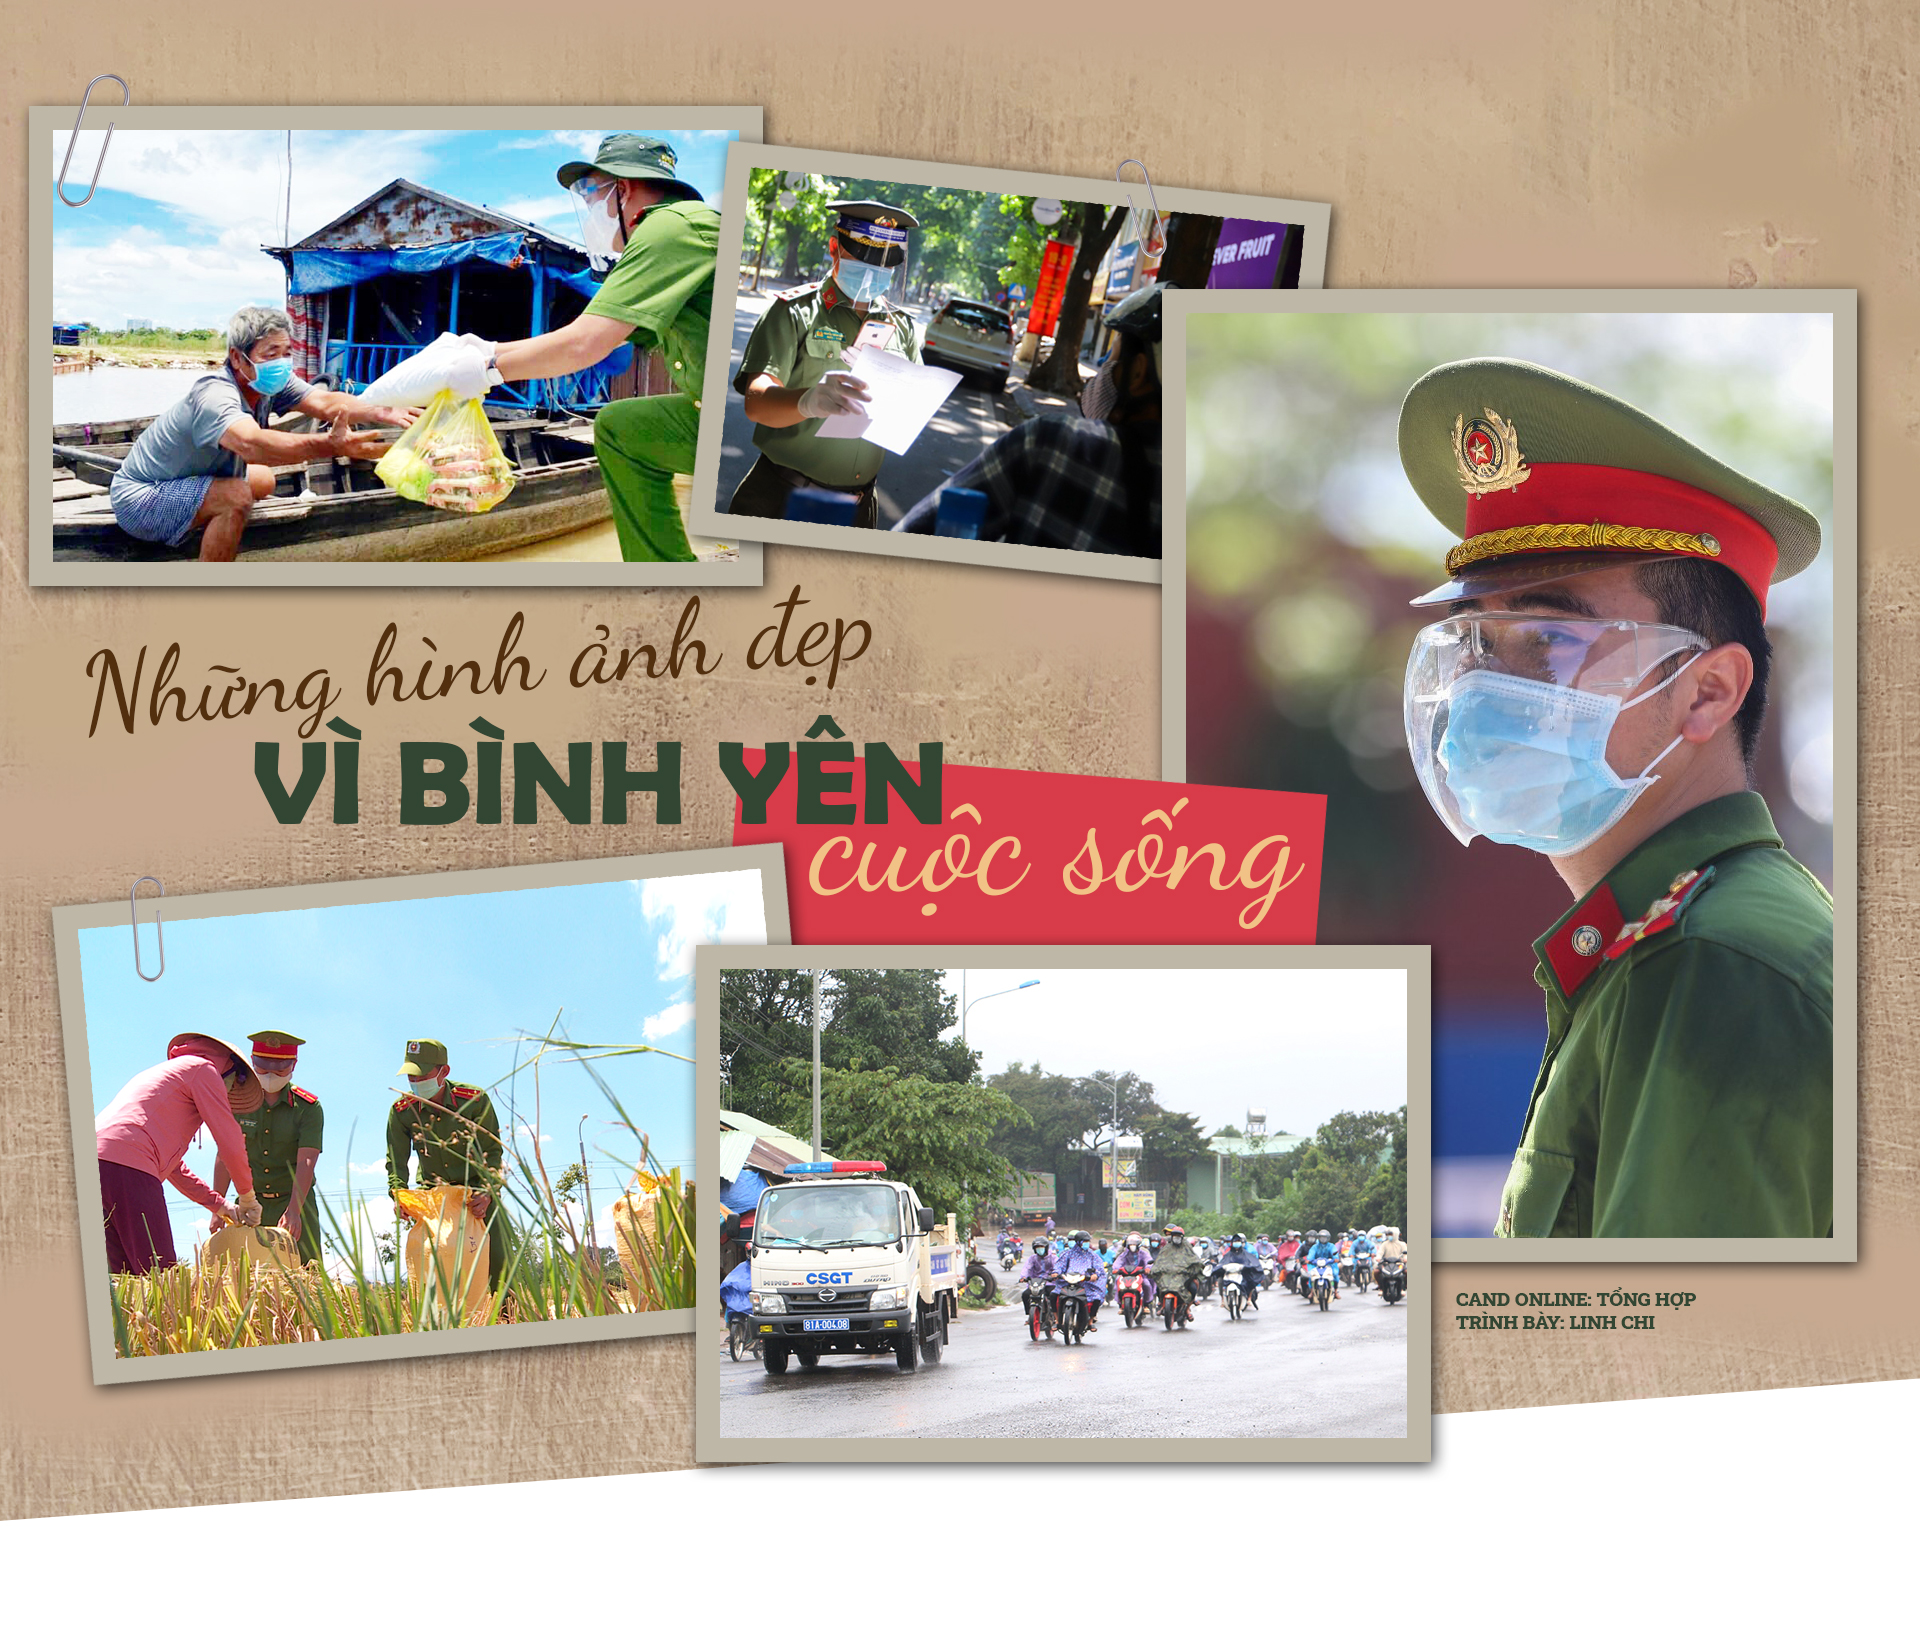 Beauty: Chào đón bạn đến với thế giới đẹp tuyệt vời của nước ta. Tận hưởng những hình ảnh đầy màu sắc và đa dạng của phong cảnh tự nhiên và văn hóa truyền thống. Sự đa dạng và sự tinh tế của vẻ đẹp Việt Nam sẽ khiến bạn say đắm không ngừng.